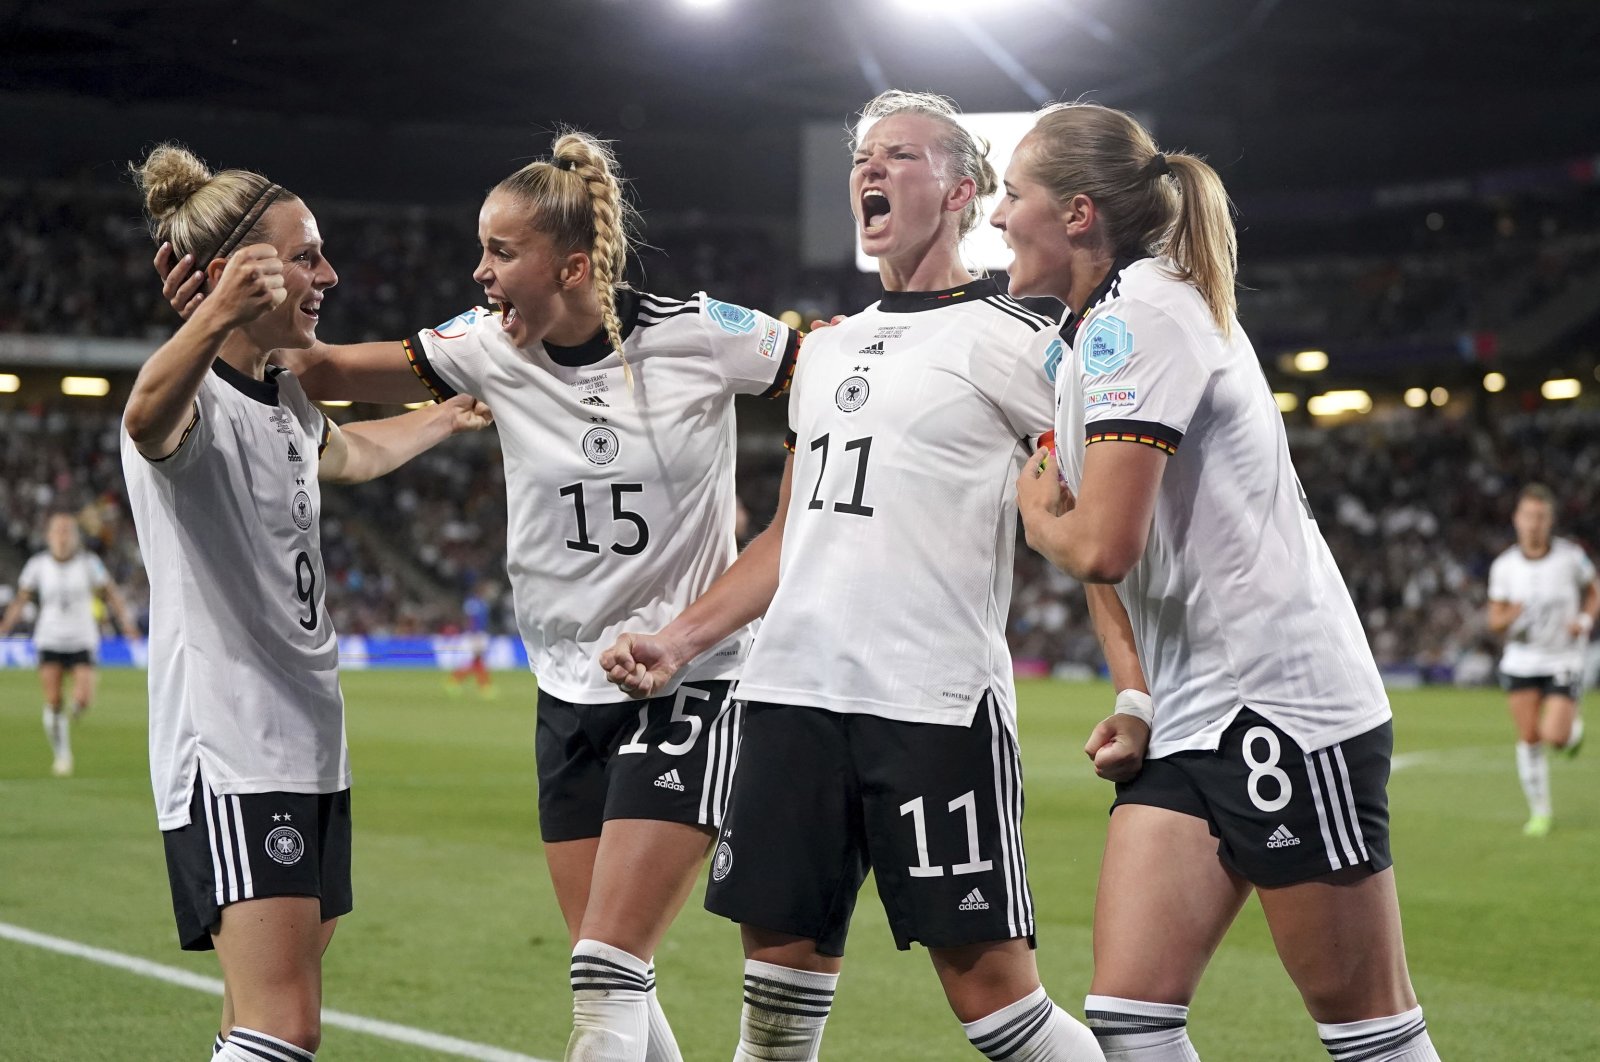 Jerman mengalahkan Prancis untuk kencan Inggris di final Euro 2022 putri